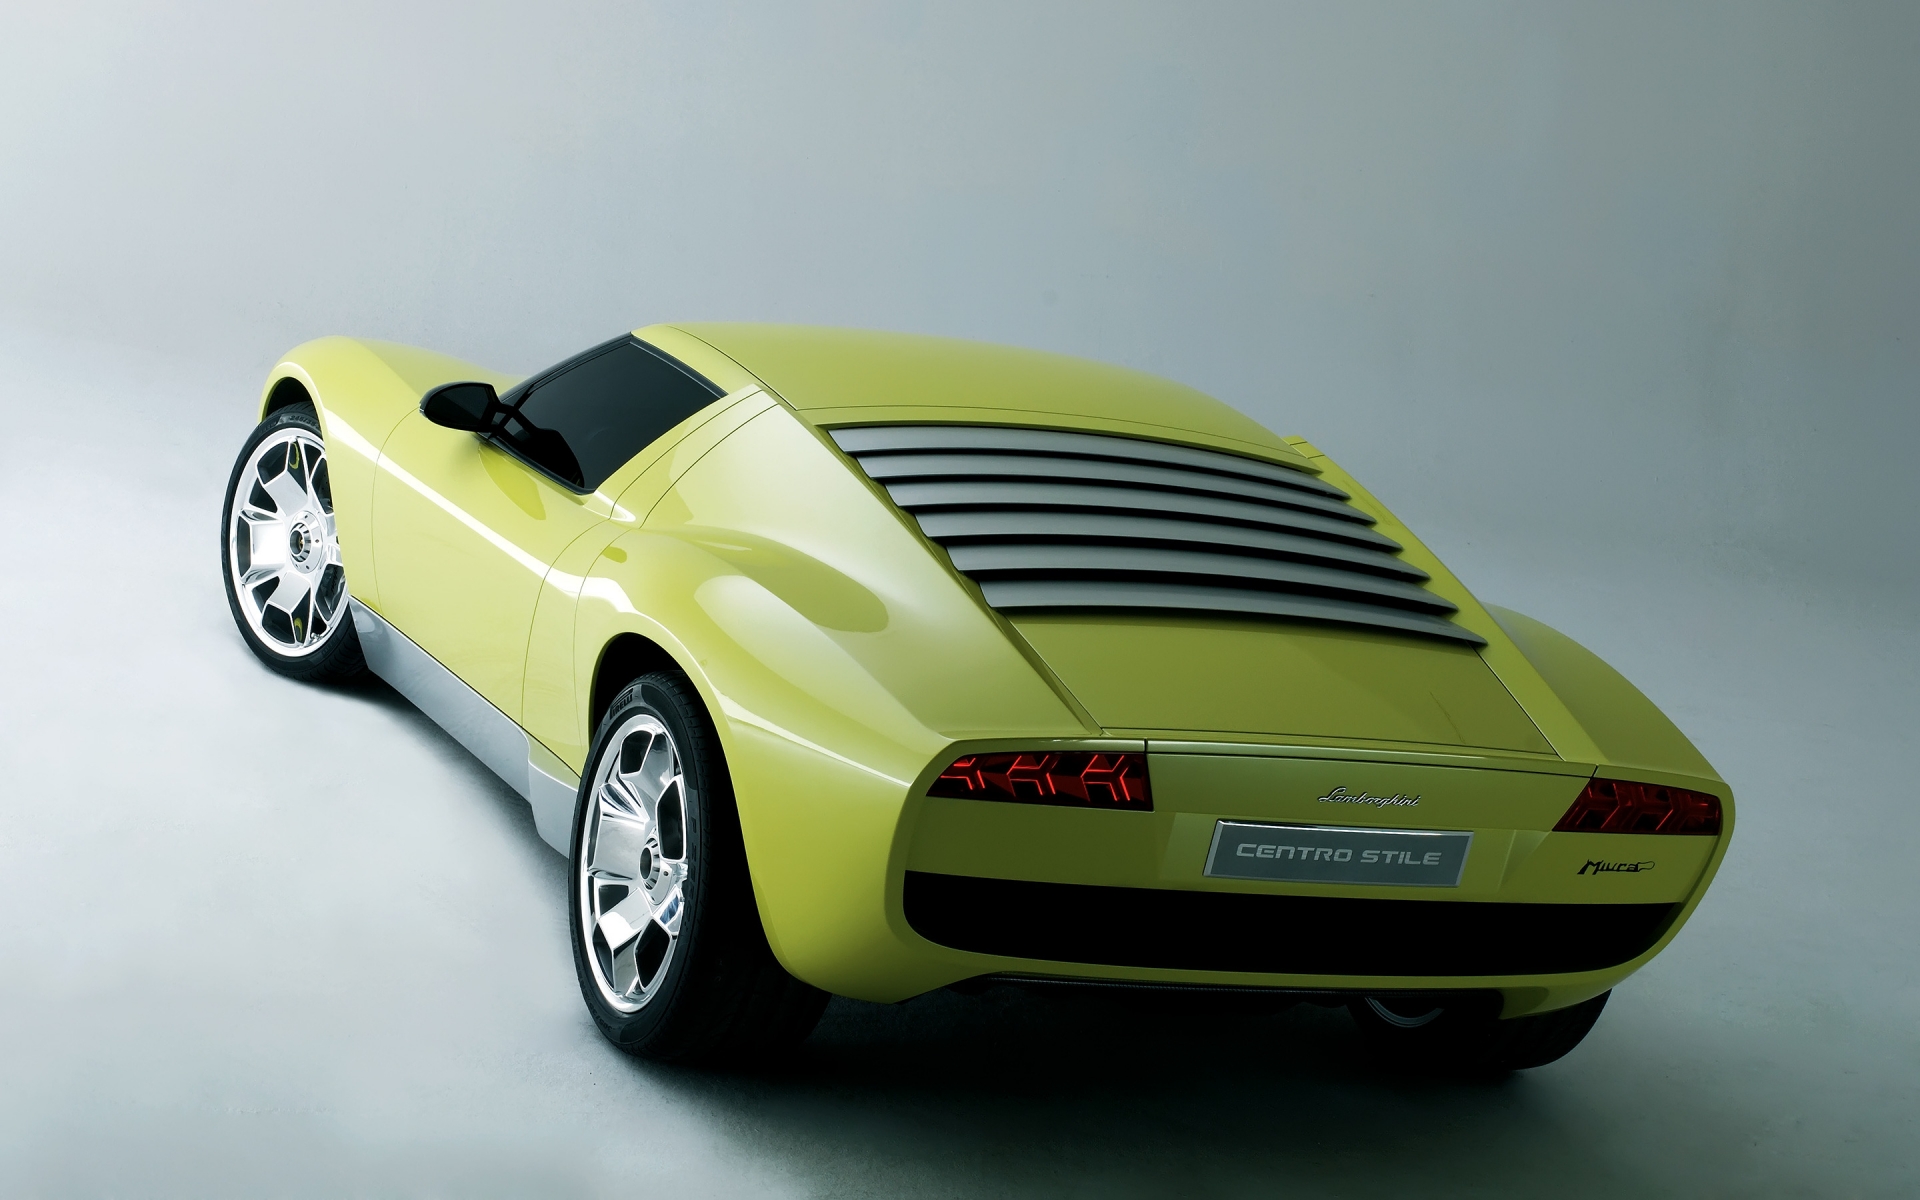 Lamborghini Miura Concept Rear for 1920 x 1200 widescreen resolution